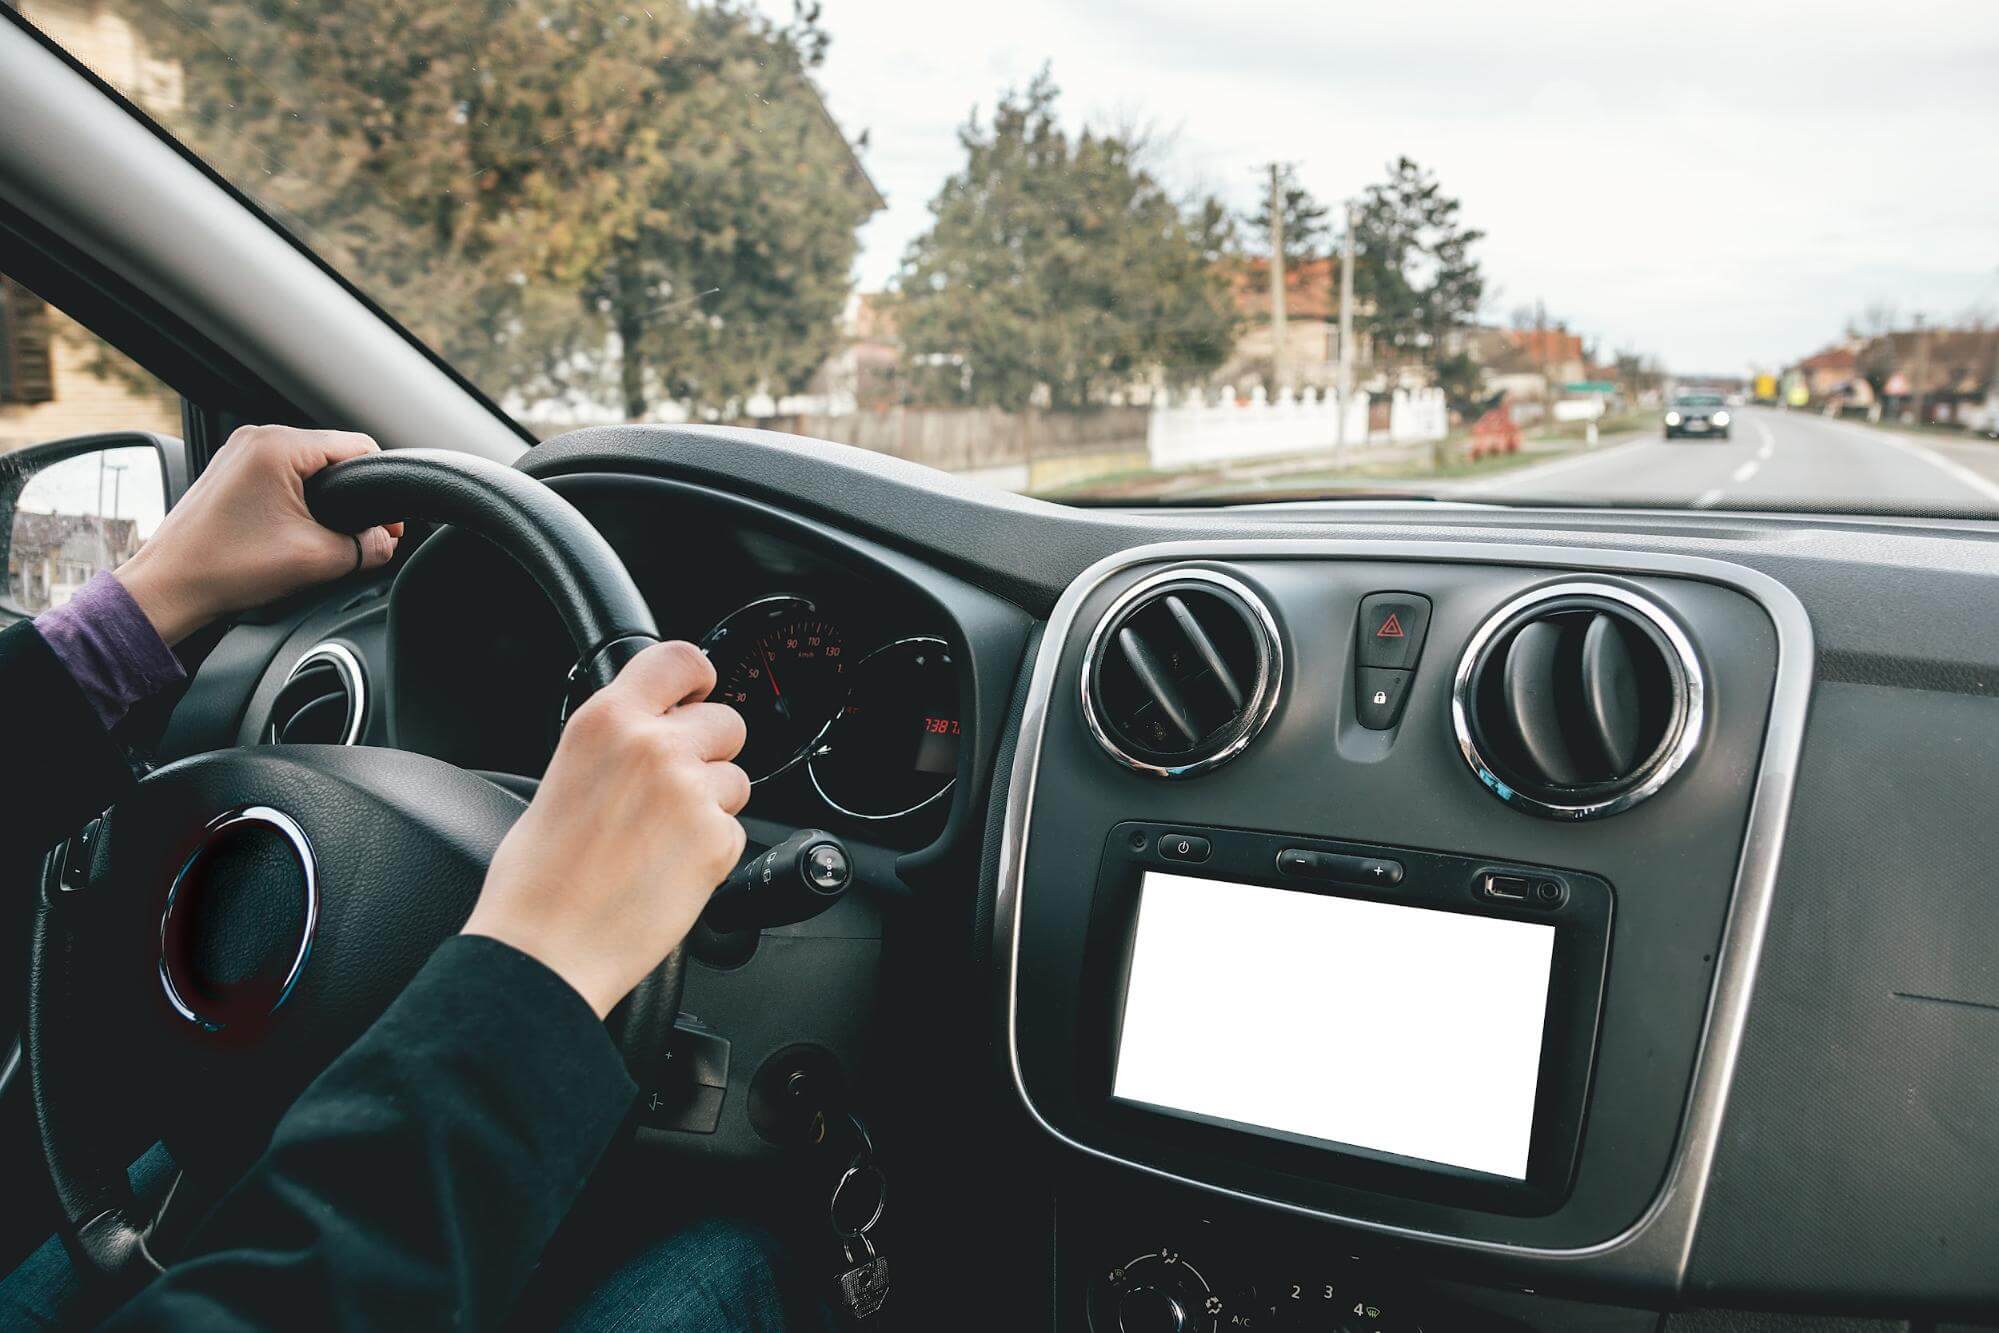 o interior de um veículo e seu painel são o foco da imagem,onde também é possível identificar mão femininas segurando o volante